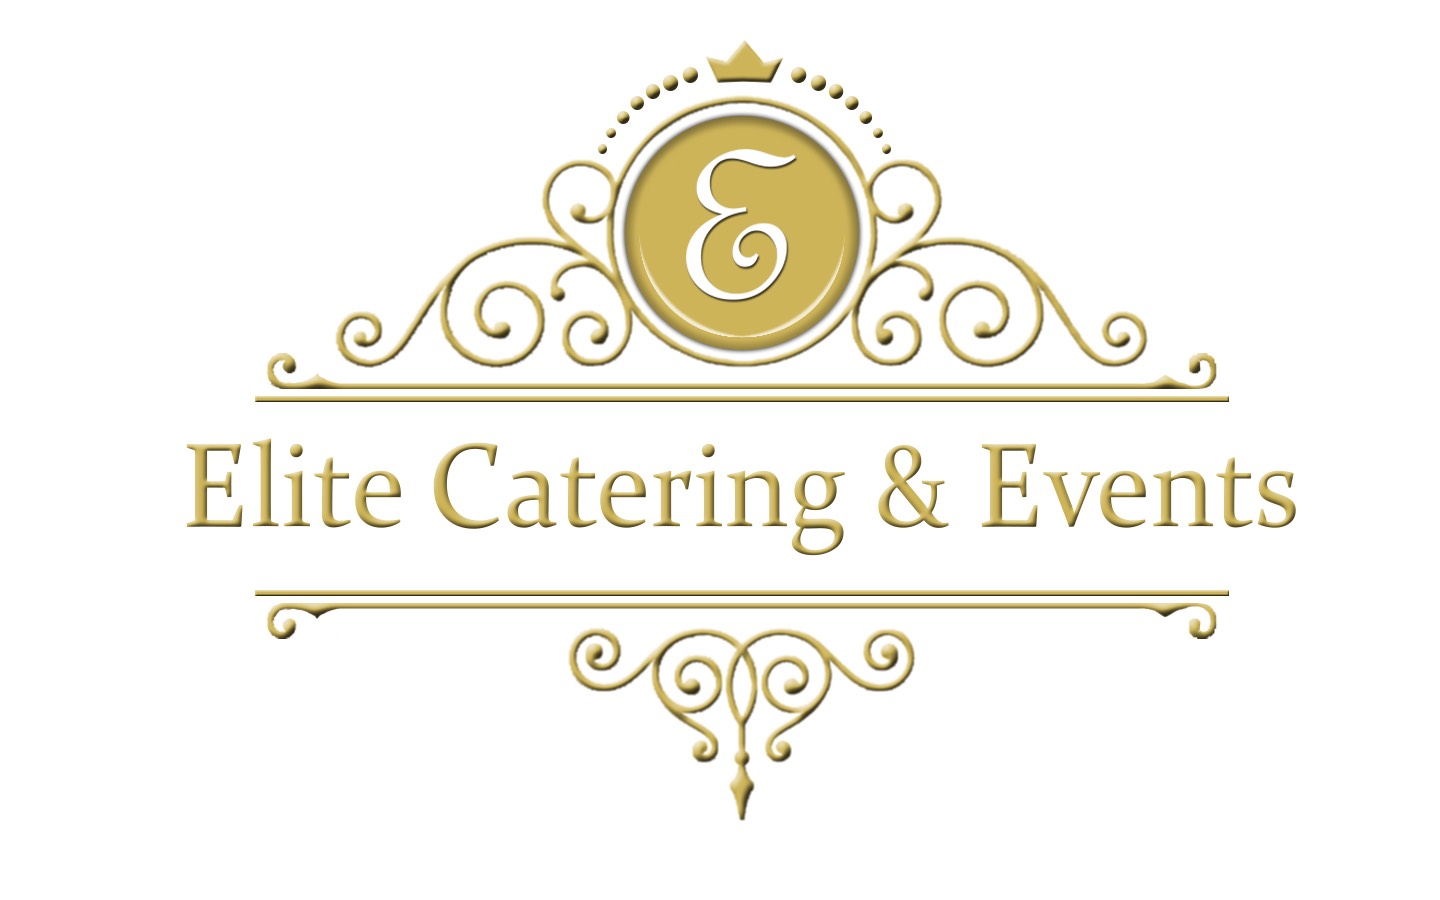 Servicios de Catering | Elite Catering & Events | Los Angeles